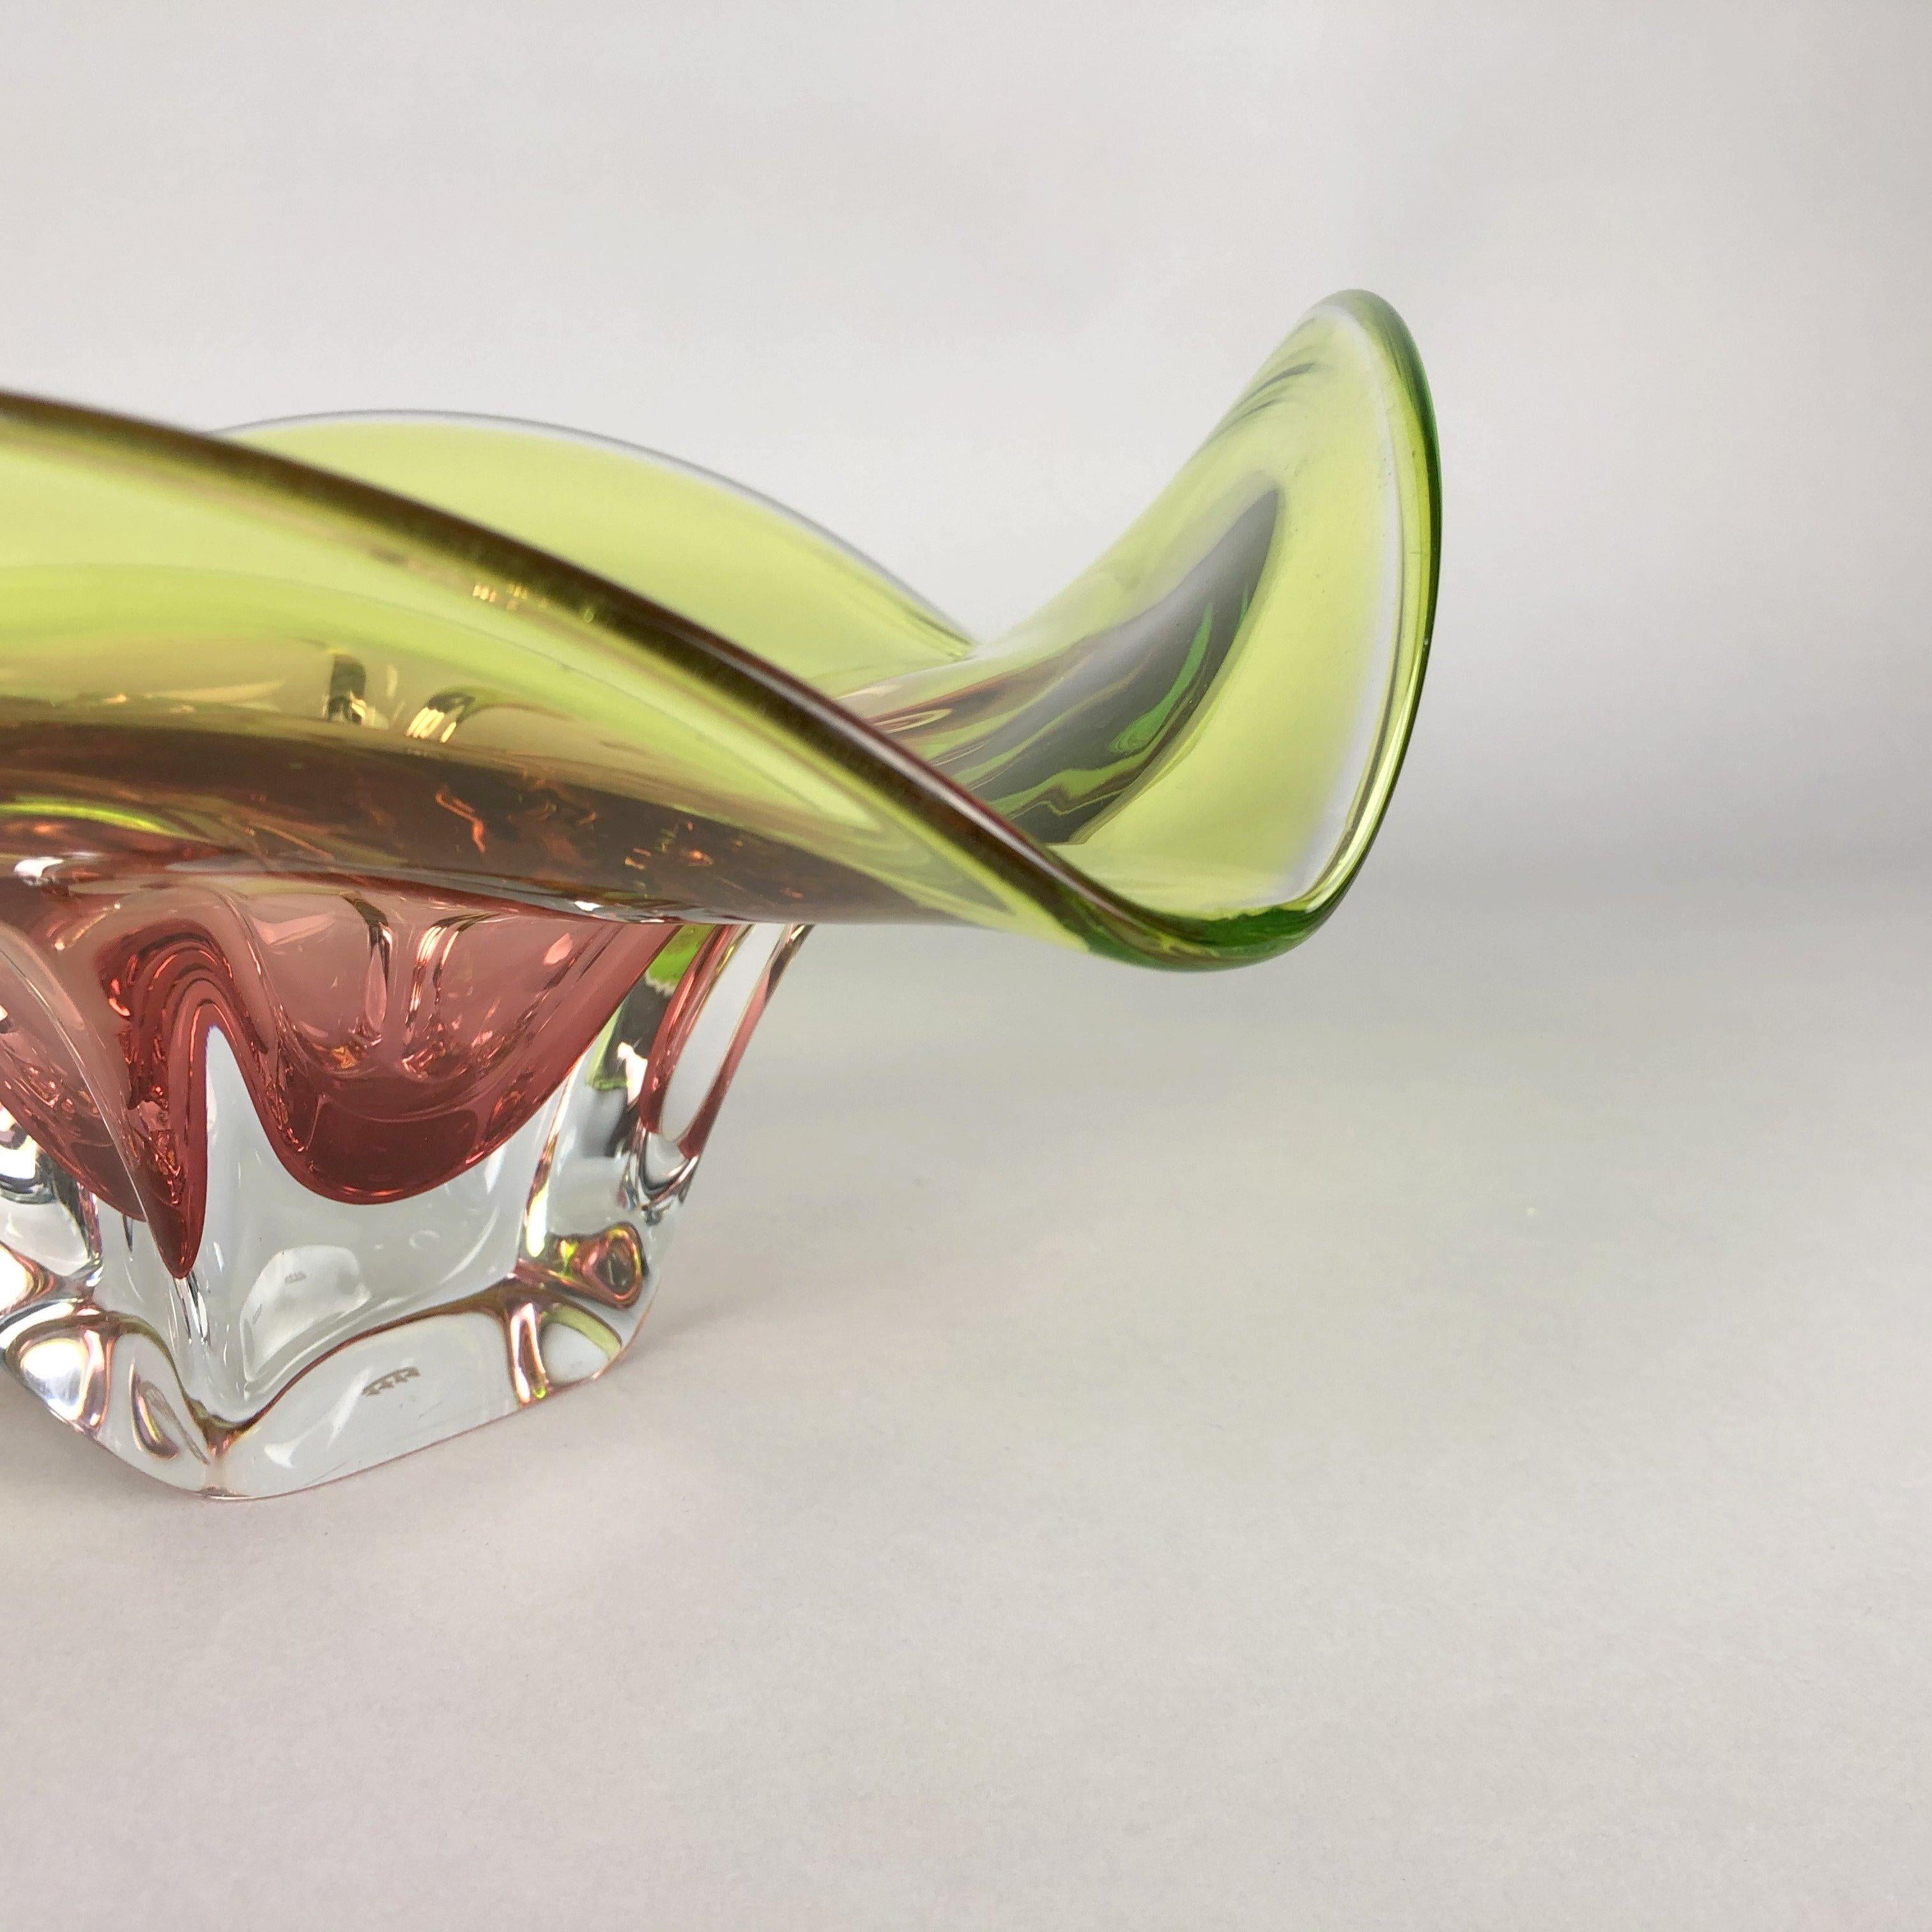 Mid-Century Modern Vintage Art Glass Bowl by Chribska Glasswork, 1960s For Sale